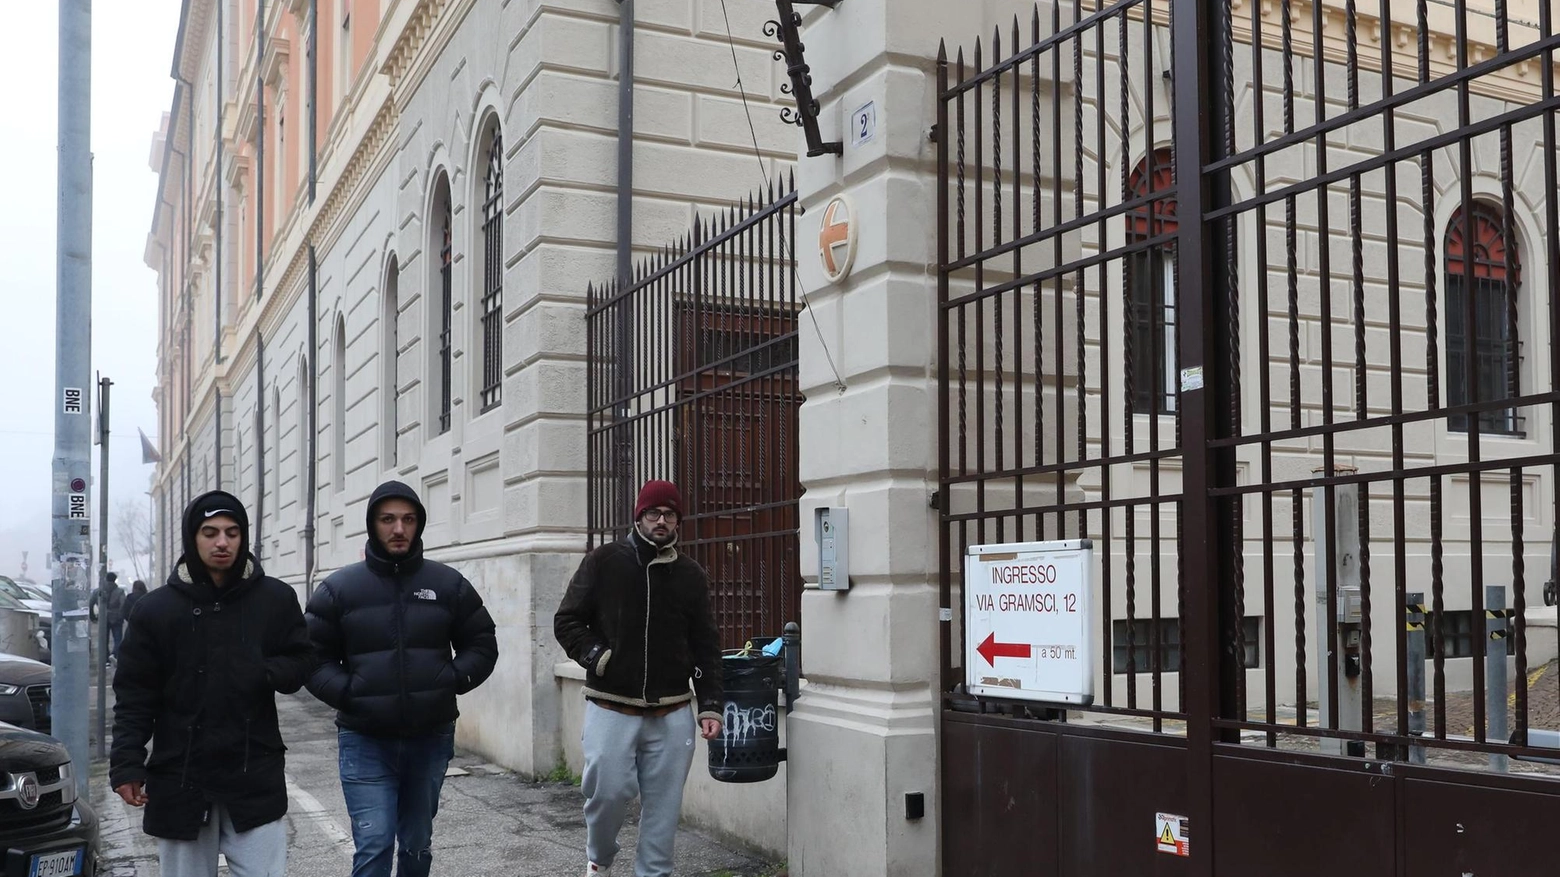 Il cancello sbarrato in via Boldrini:. caos per alcuni utenti dell’Ausl